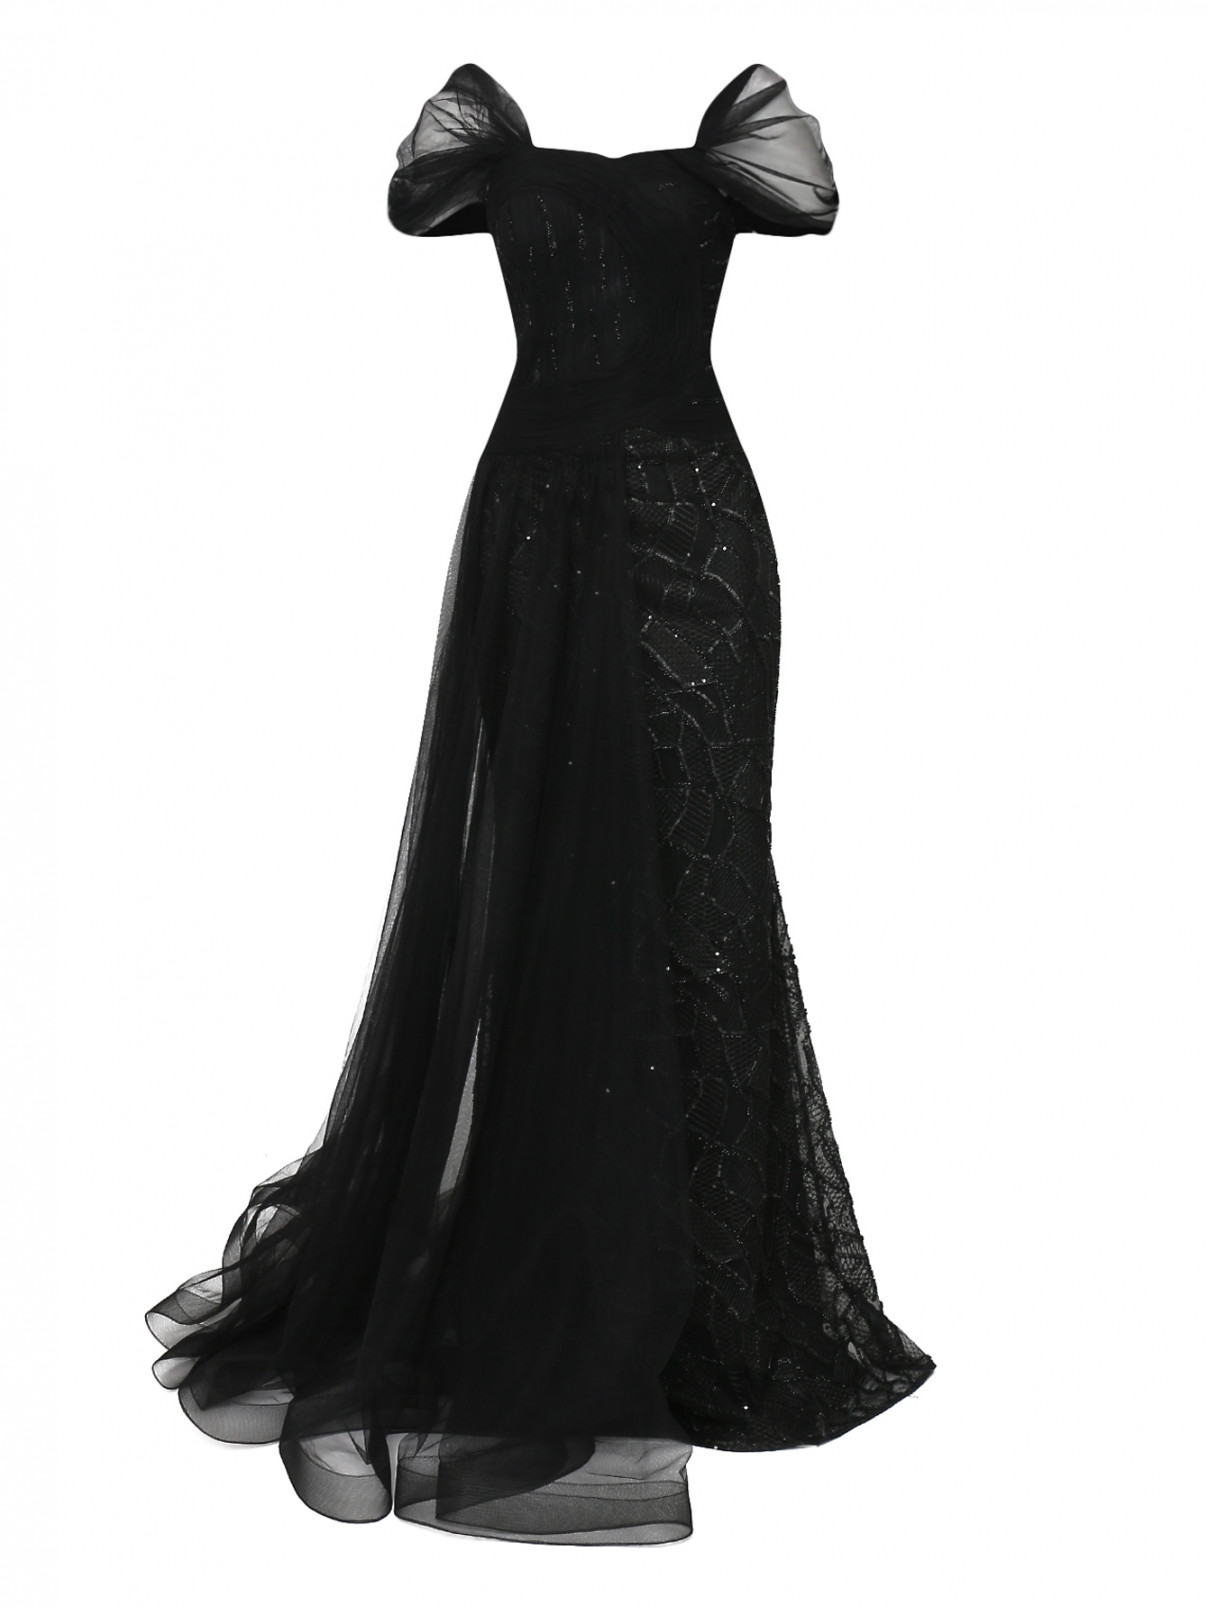 Платье макси с корсетом , пышной юбкой и вышивкой бисером по всему изделию Gaby Charbachi  –  Общий вид  – Цвет:  Черный